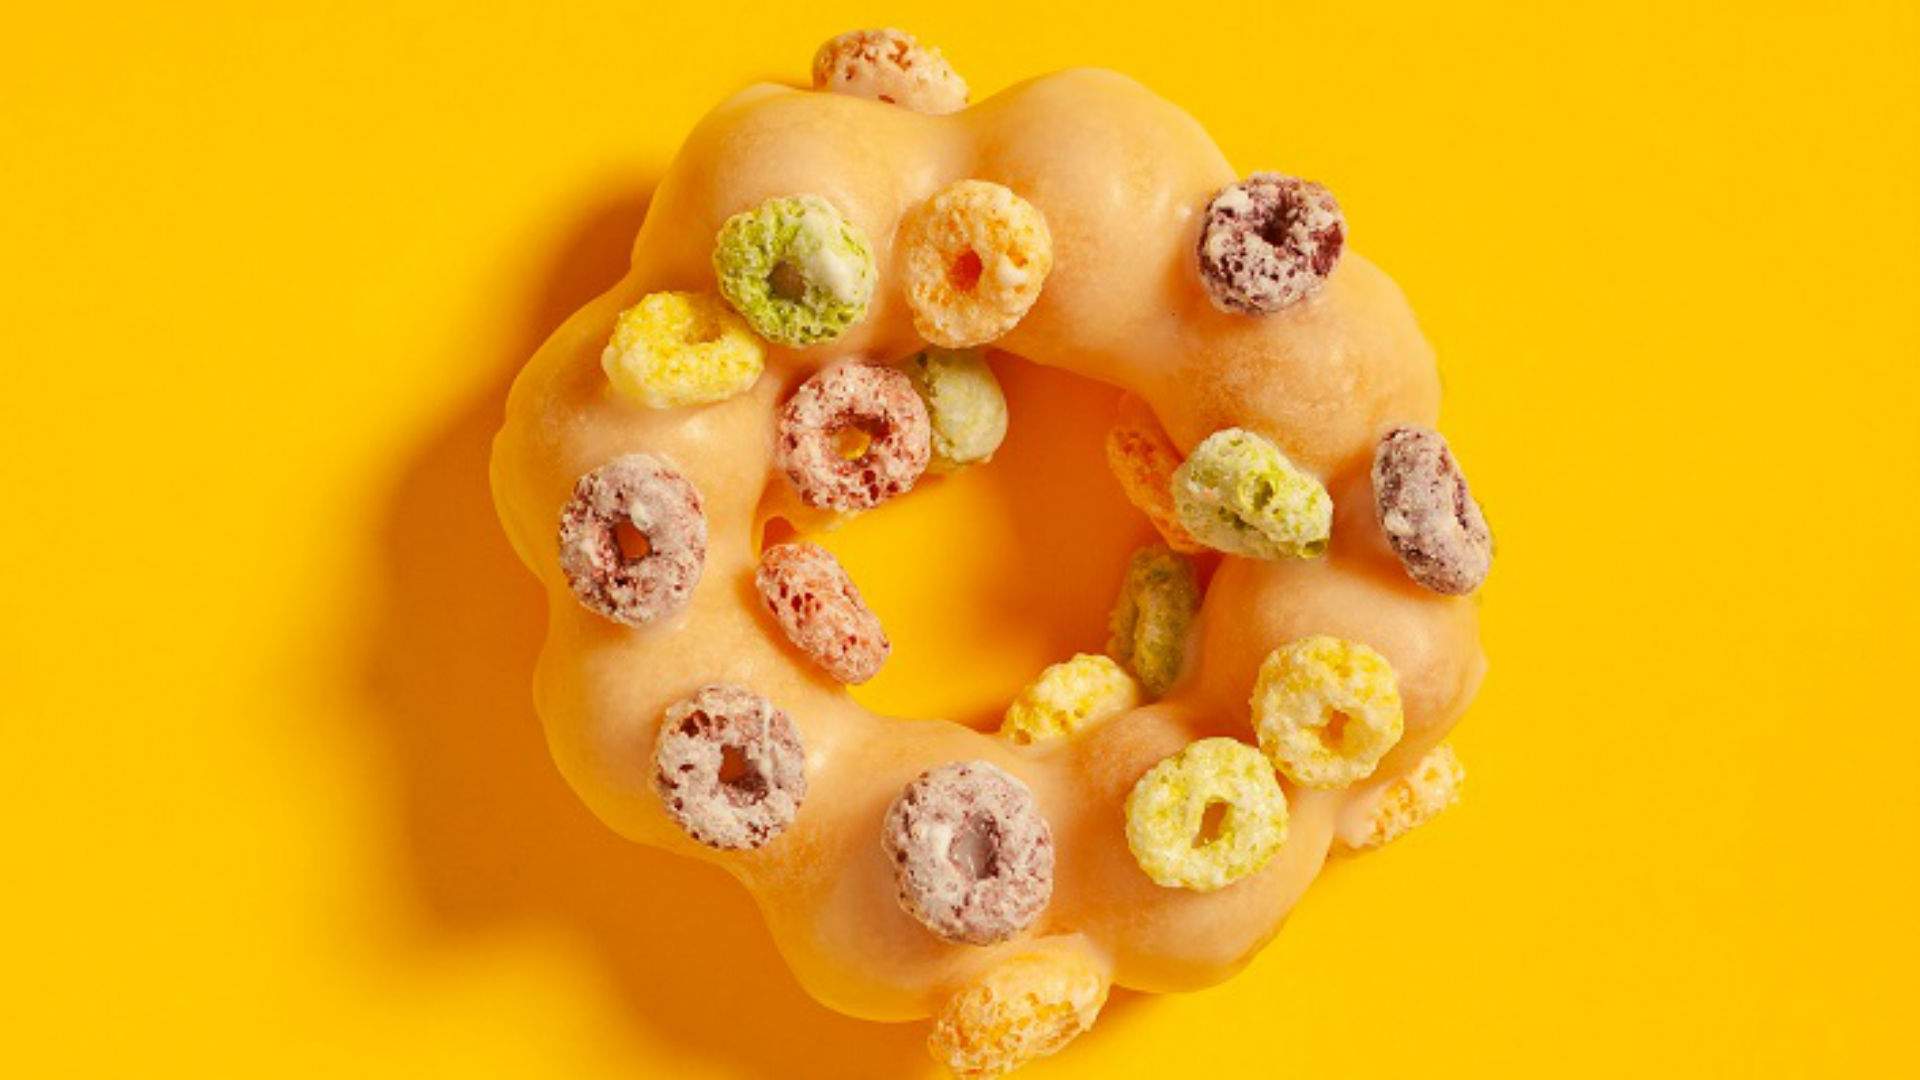 Demochi Is Sydney's First Dessert Shop Dedicated to Mochi Doughnuts